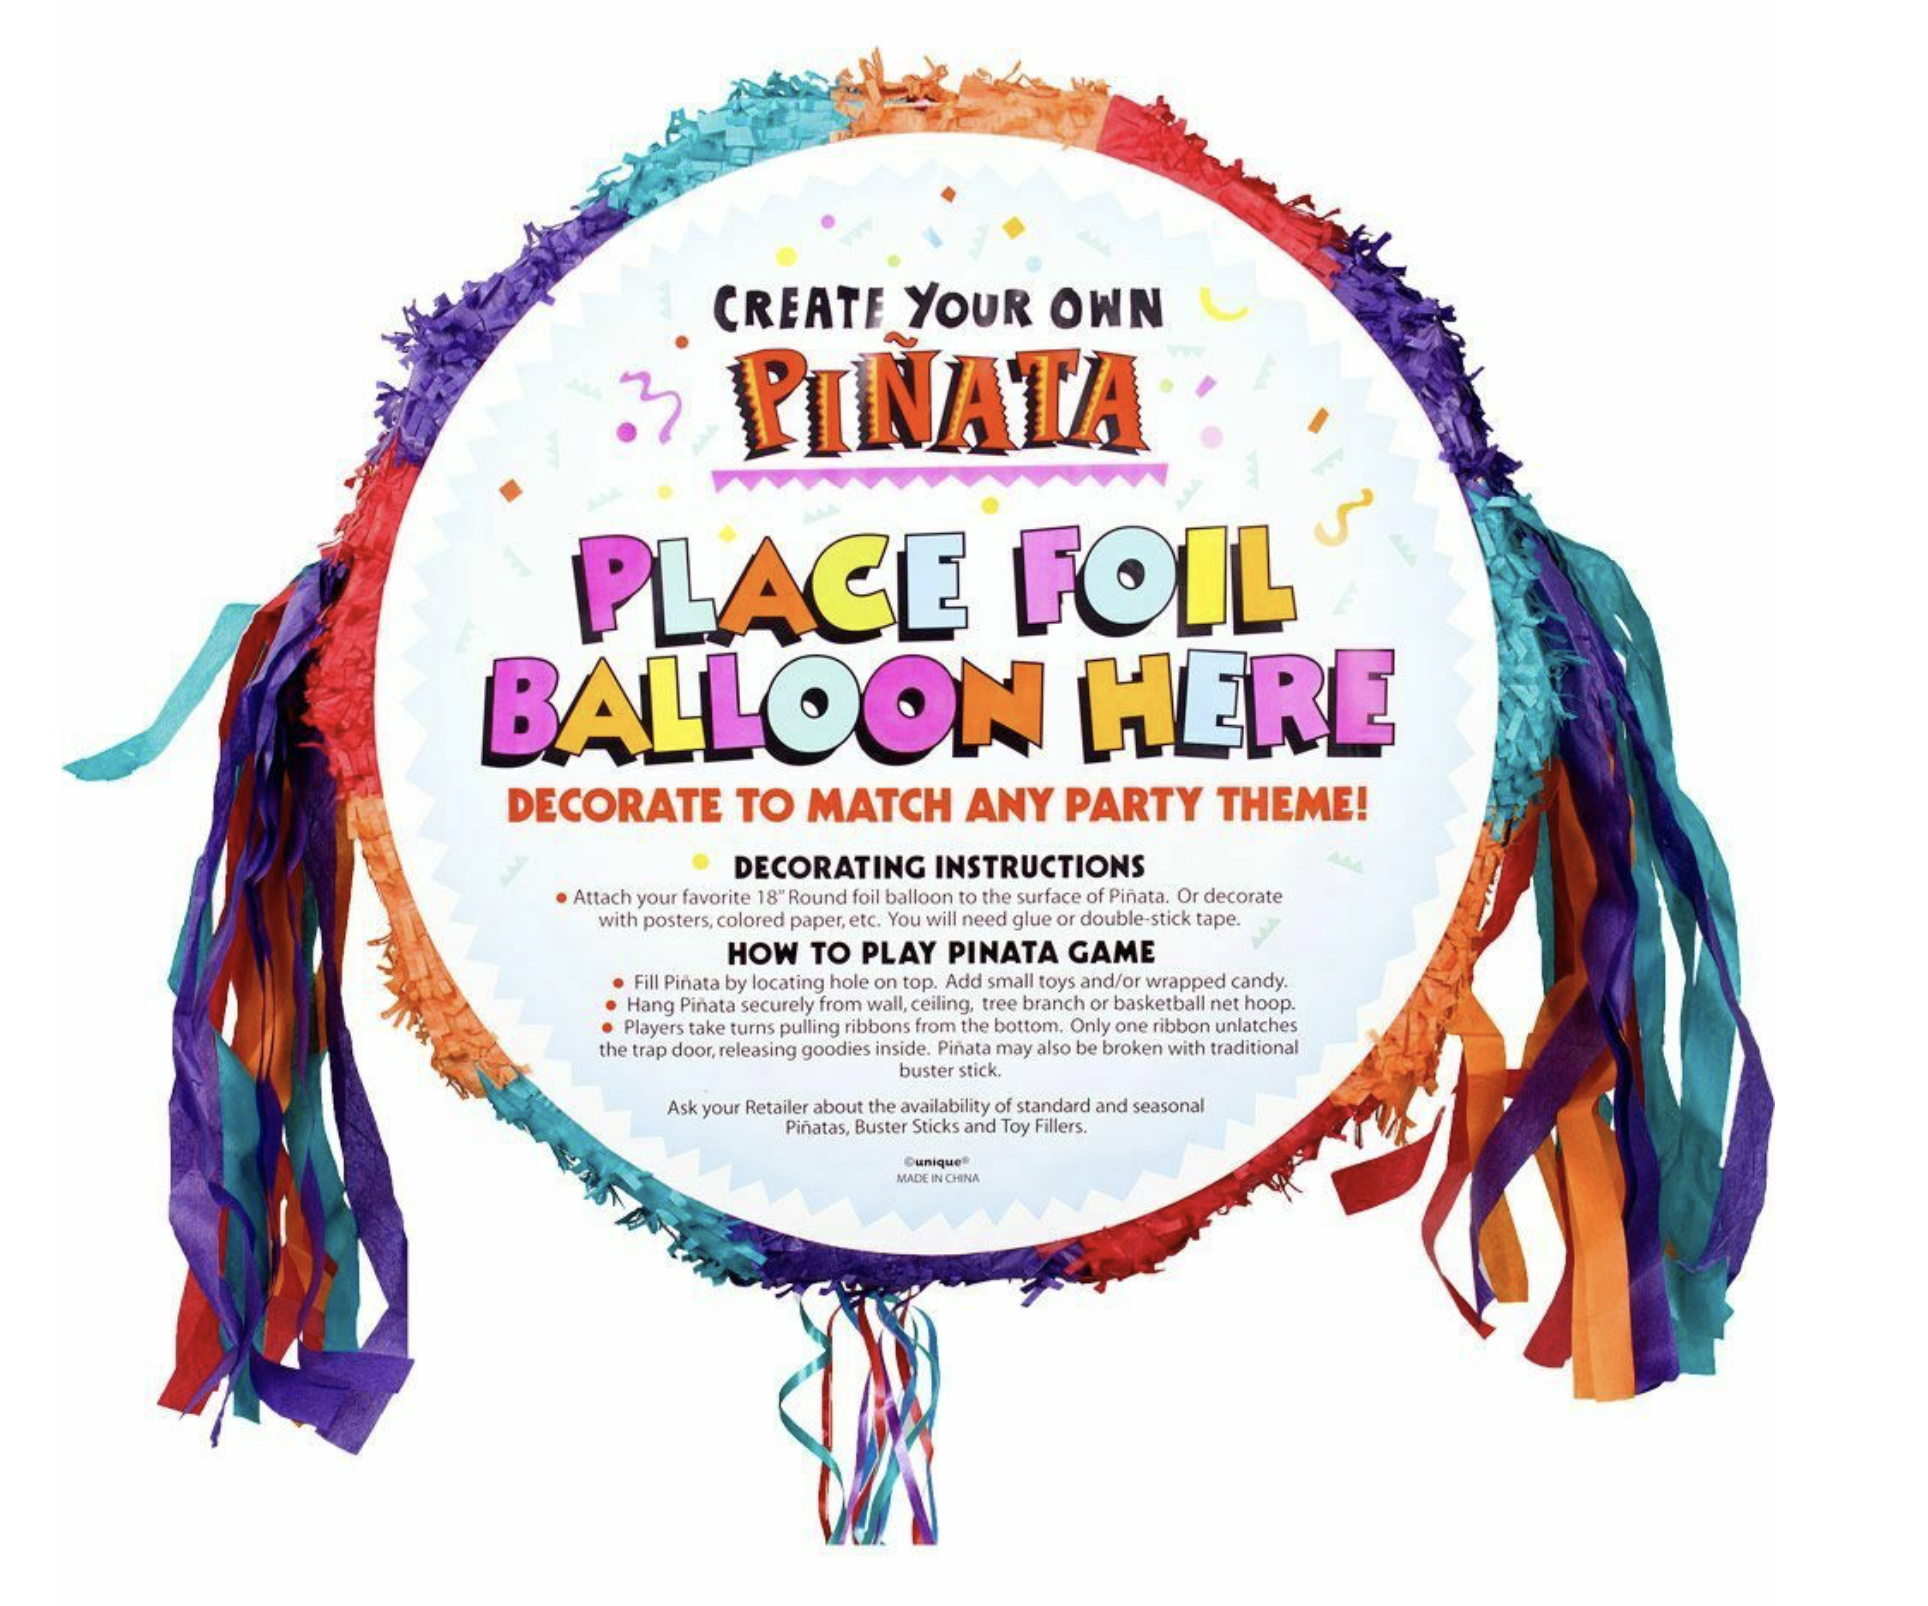 Colorful Happy Birthday Round Pinata Drum - China Round Pinata